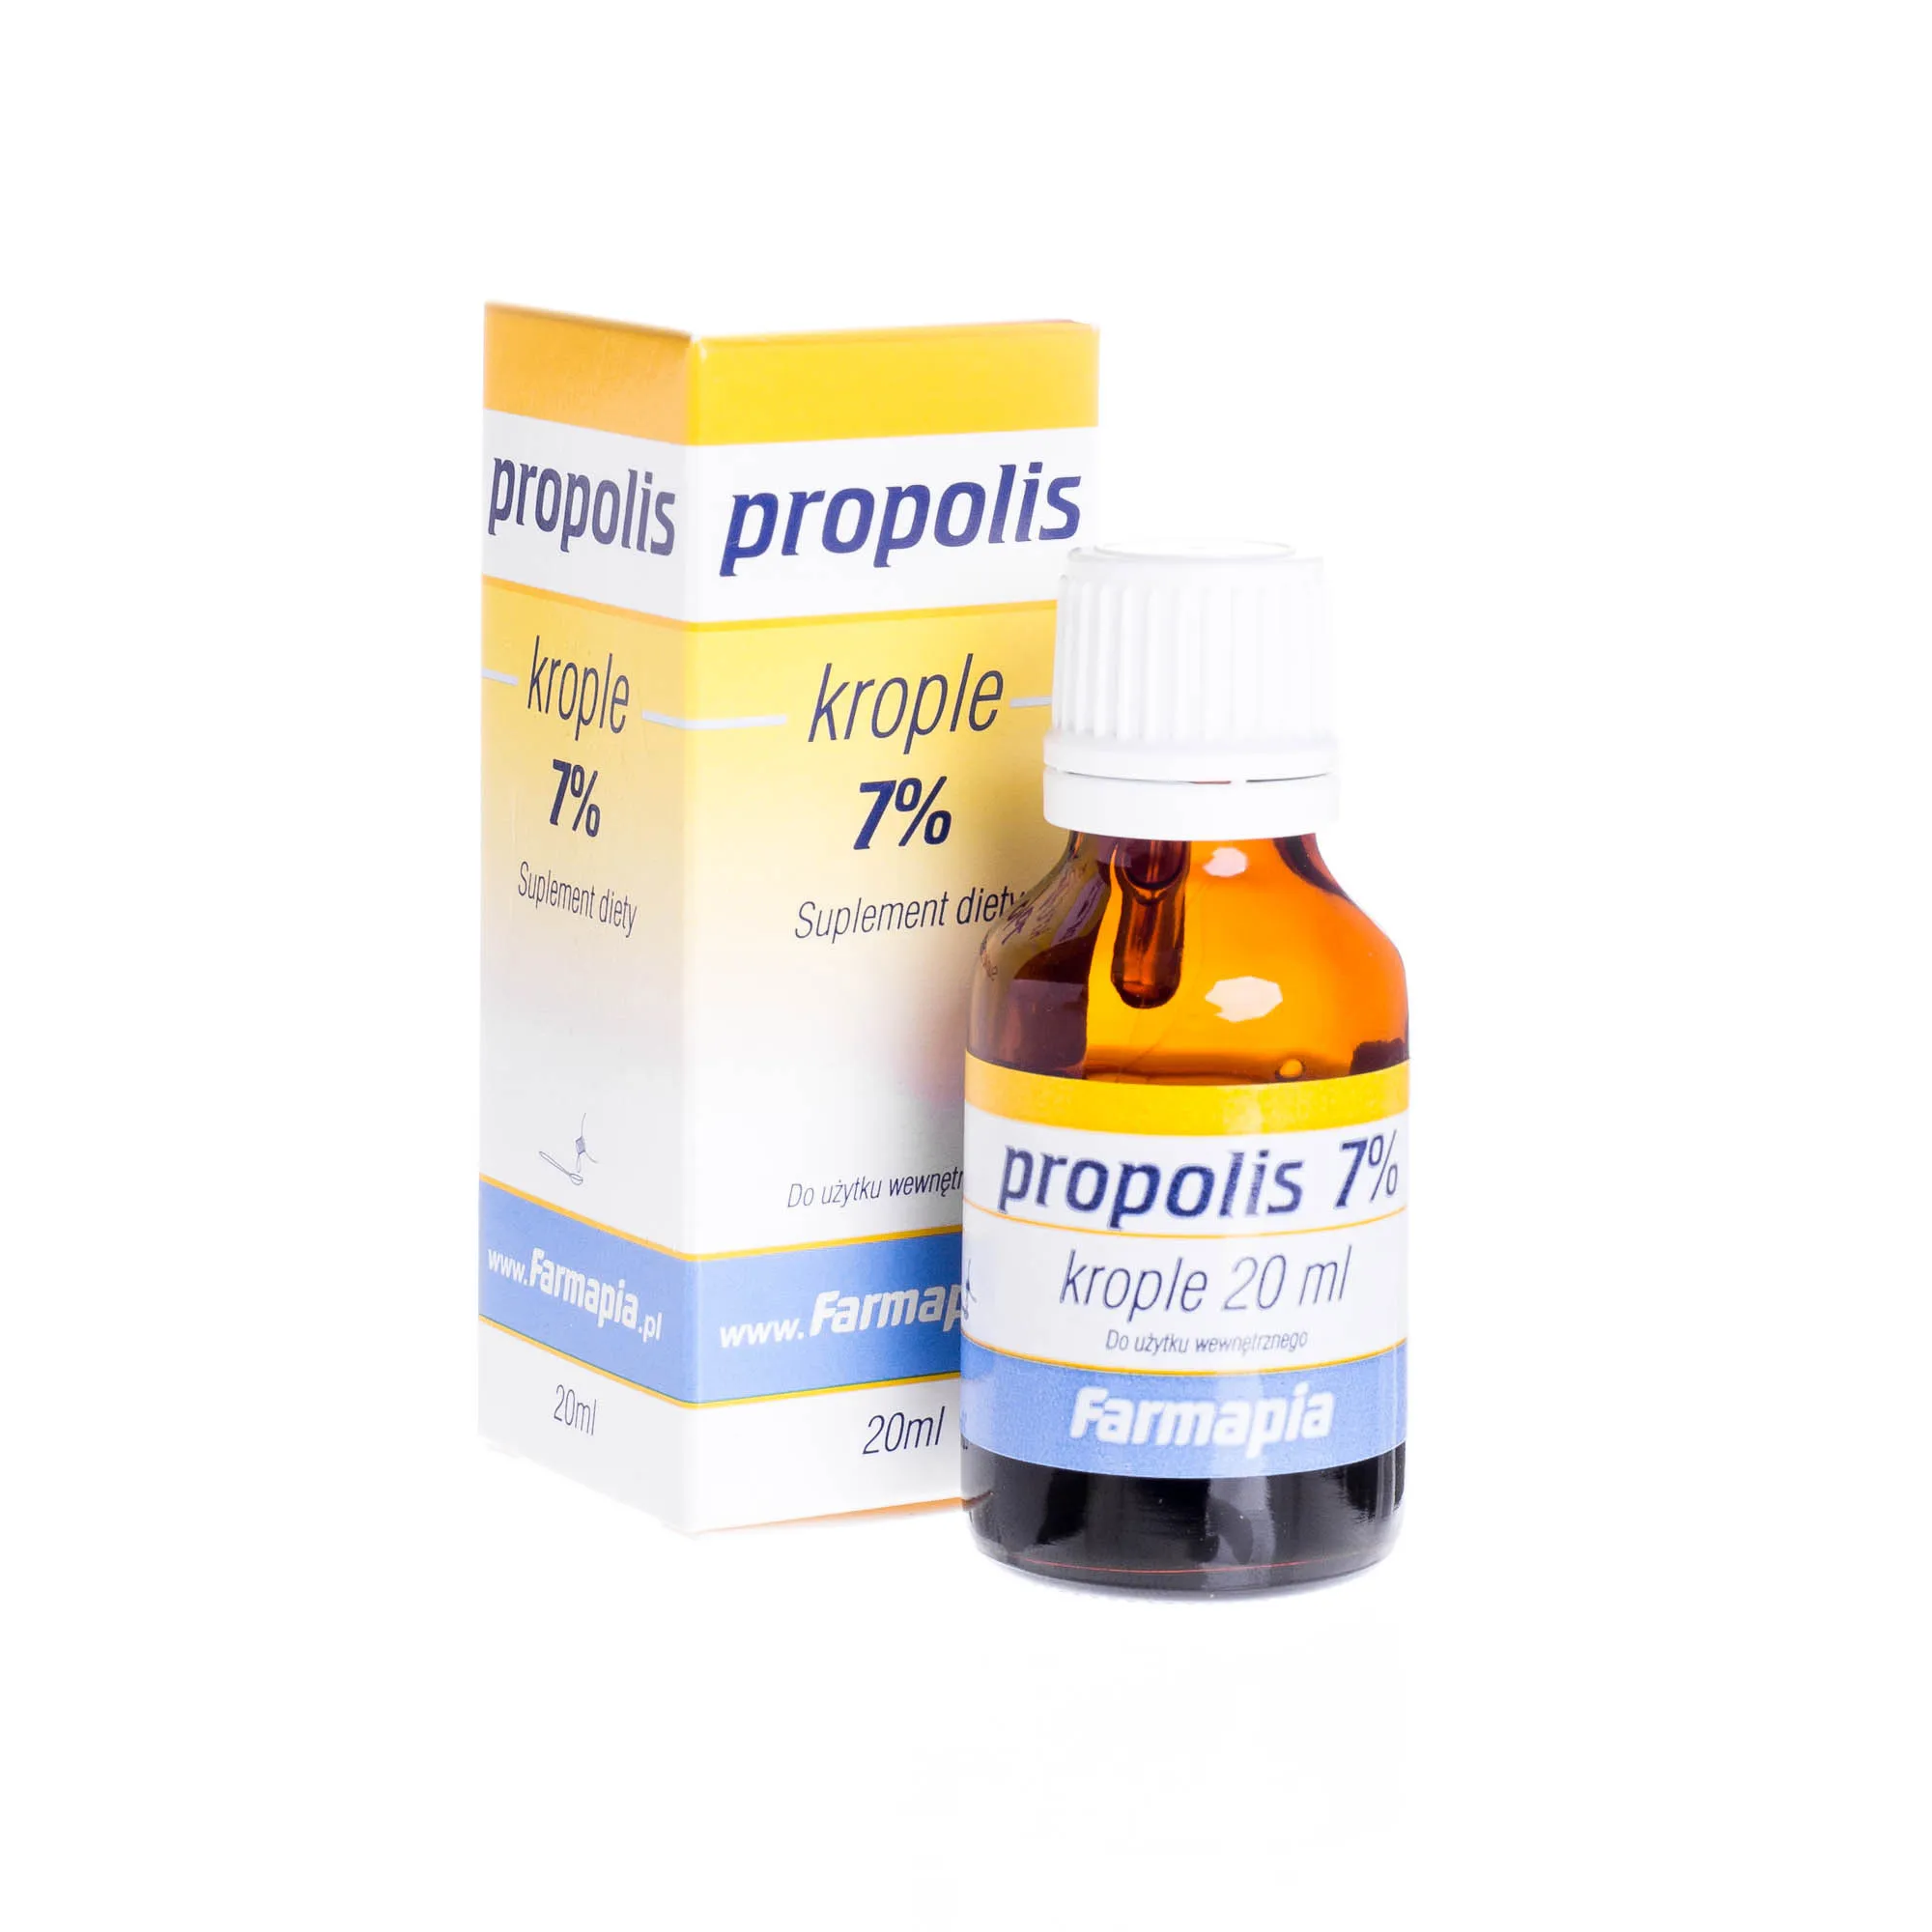 Propolis - krople 7% do użytku wewnętrznego, 20 ml